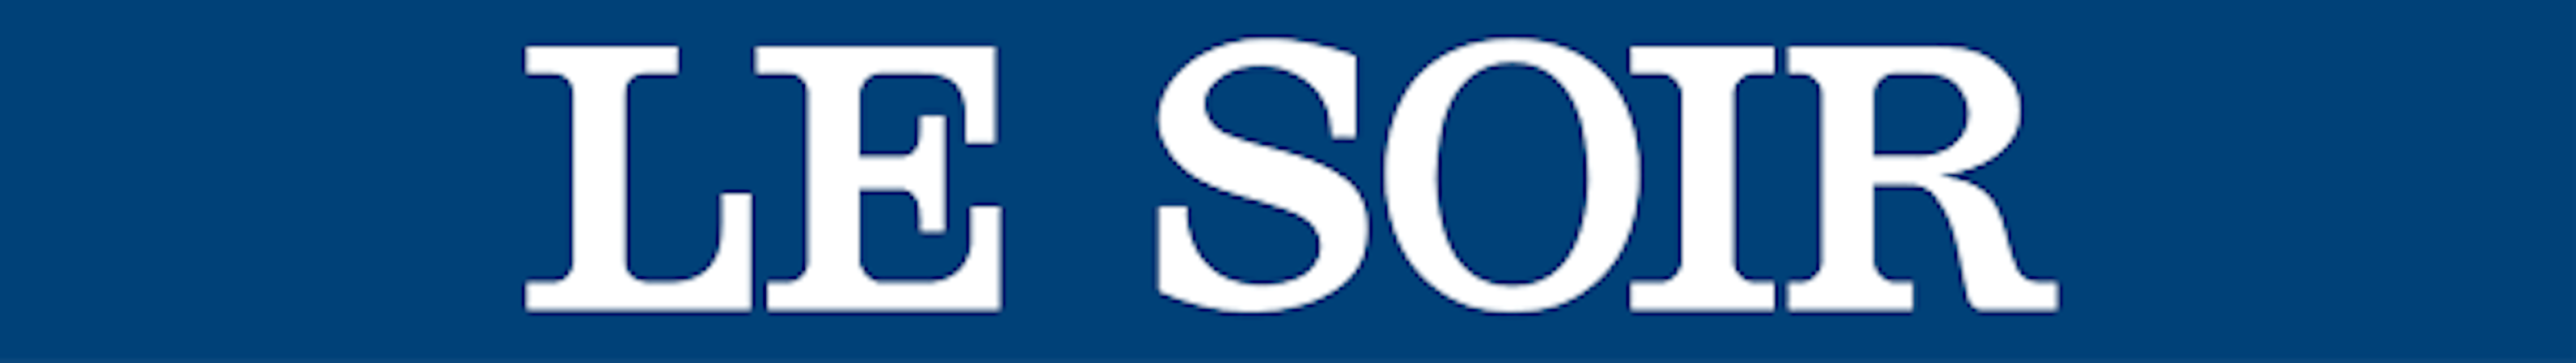 Logo de Le Soir, presse qui a déjà publié des articles sur We Invest.